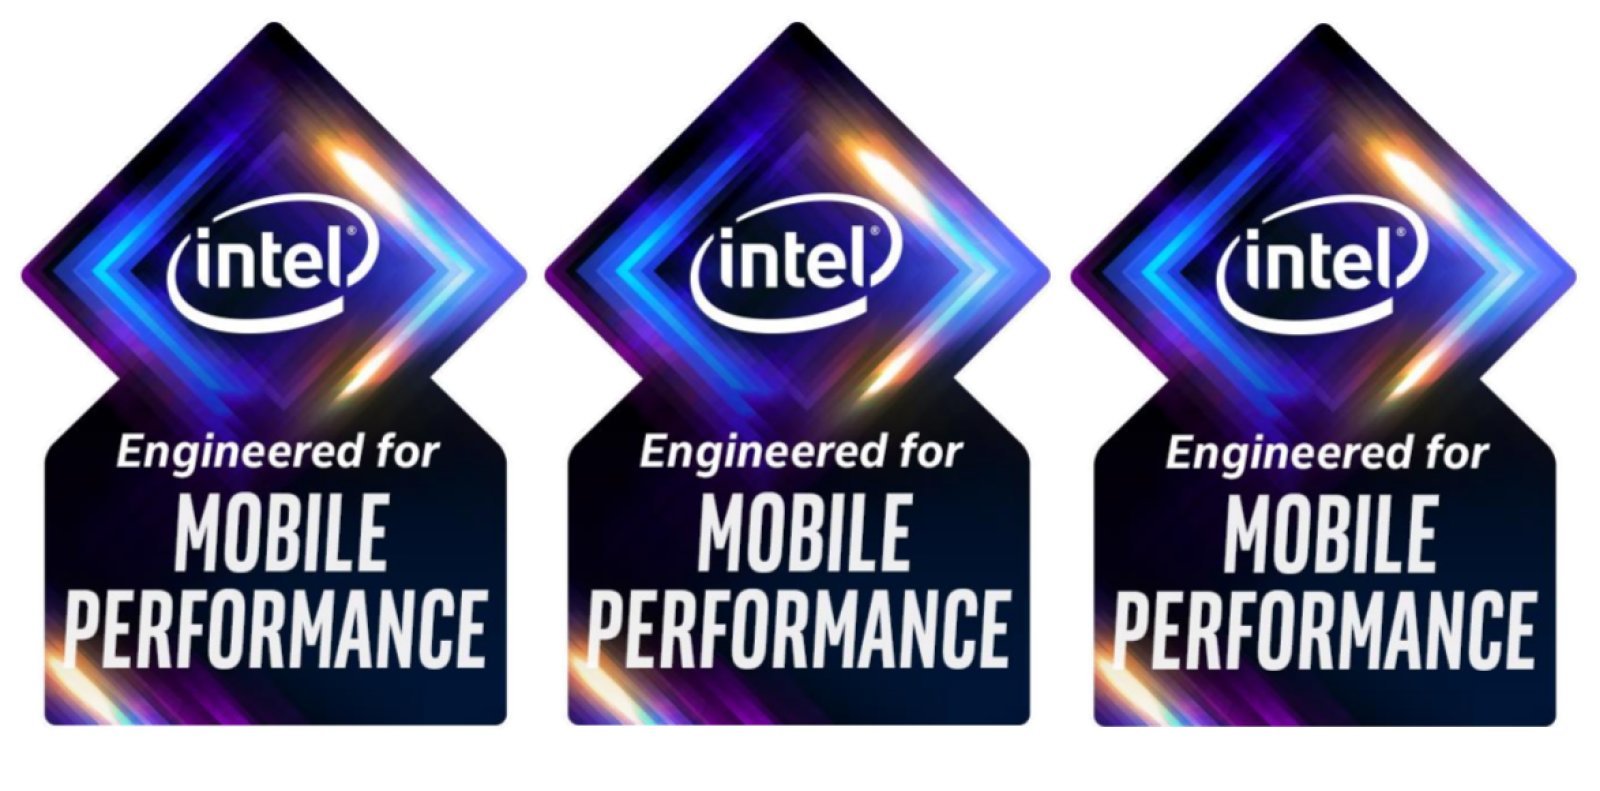 Dự án bí ẩn của Intel - Project Athena đã có nhãn hiệu "Intel Inside" phiên bản riêng